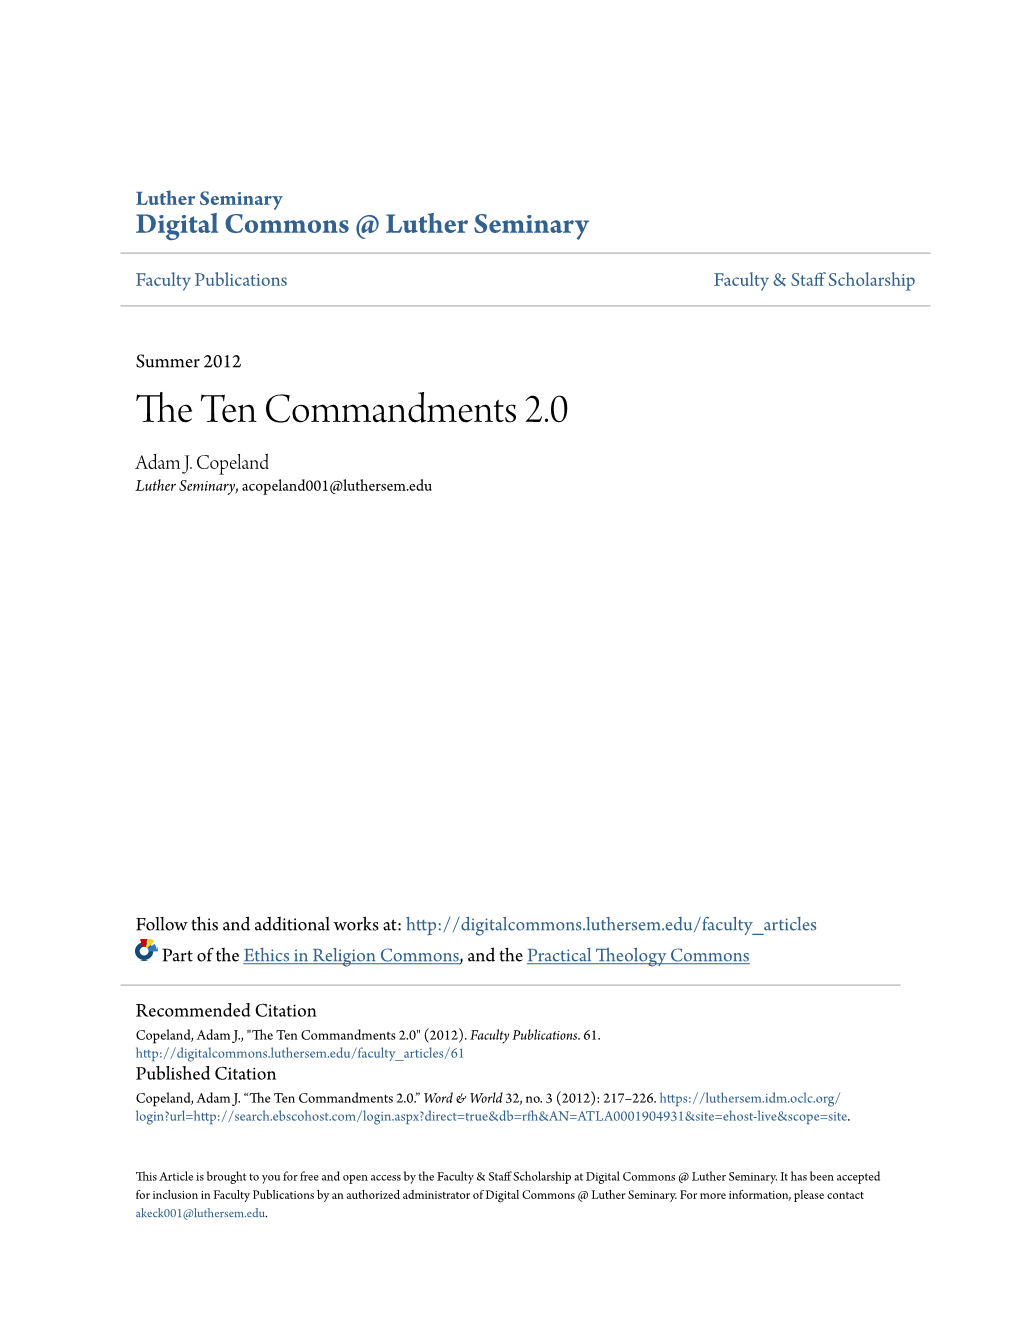 The Ten Commandments 2.0 ADAM J